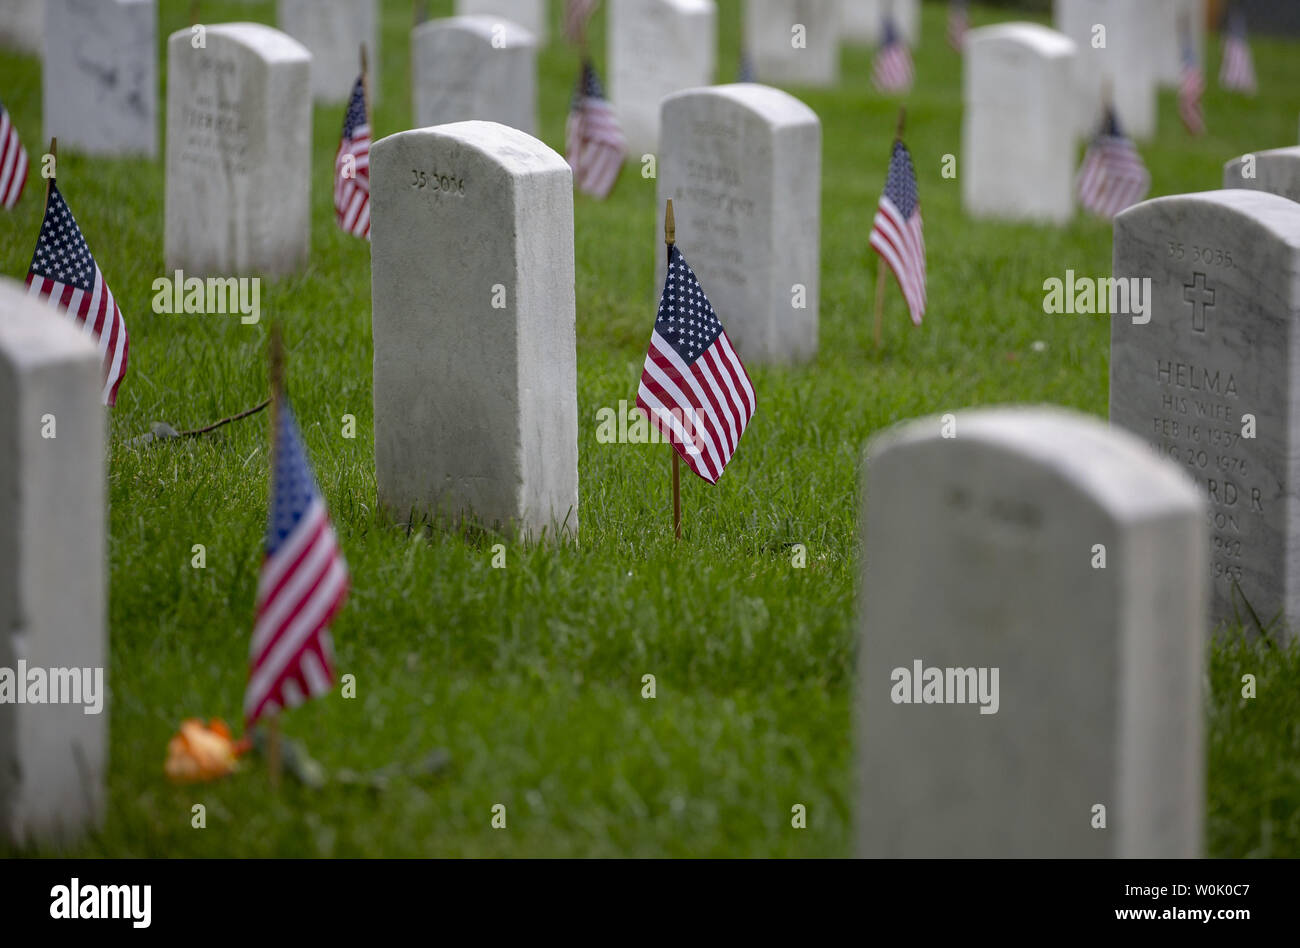 Una bandiera americana è visto in una tomba di pietra al Cimitero Nazionale di Arlington per il Memorial Day il 28 maggio 2018 in Arlington,VA. Foto di Tasos Katopodis/UPI Foto Stock